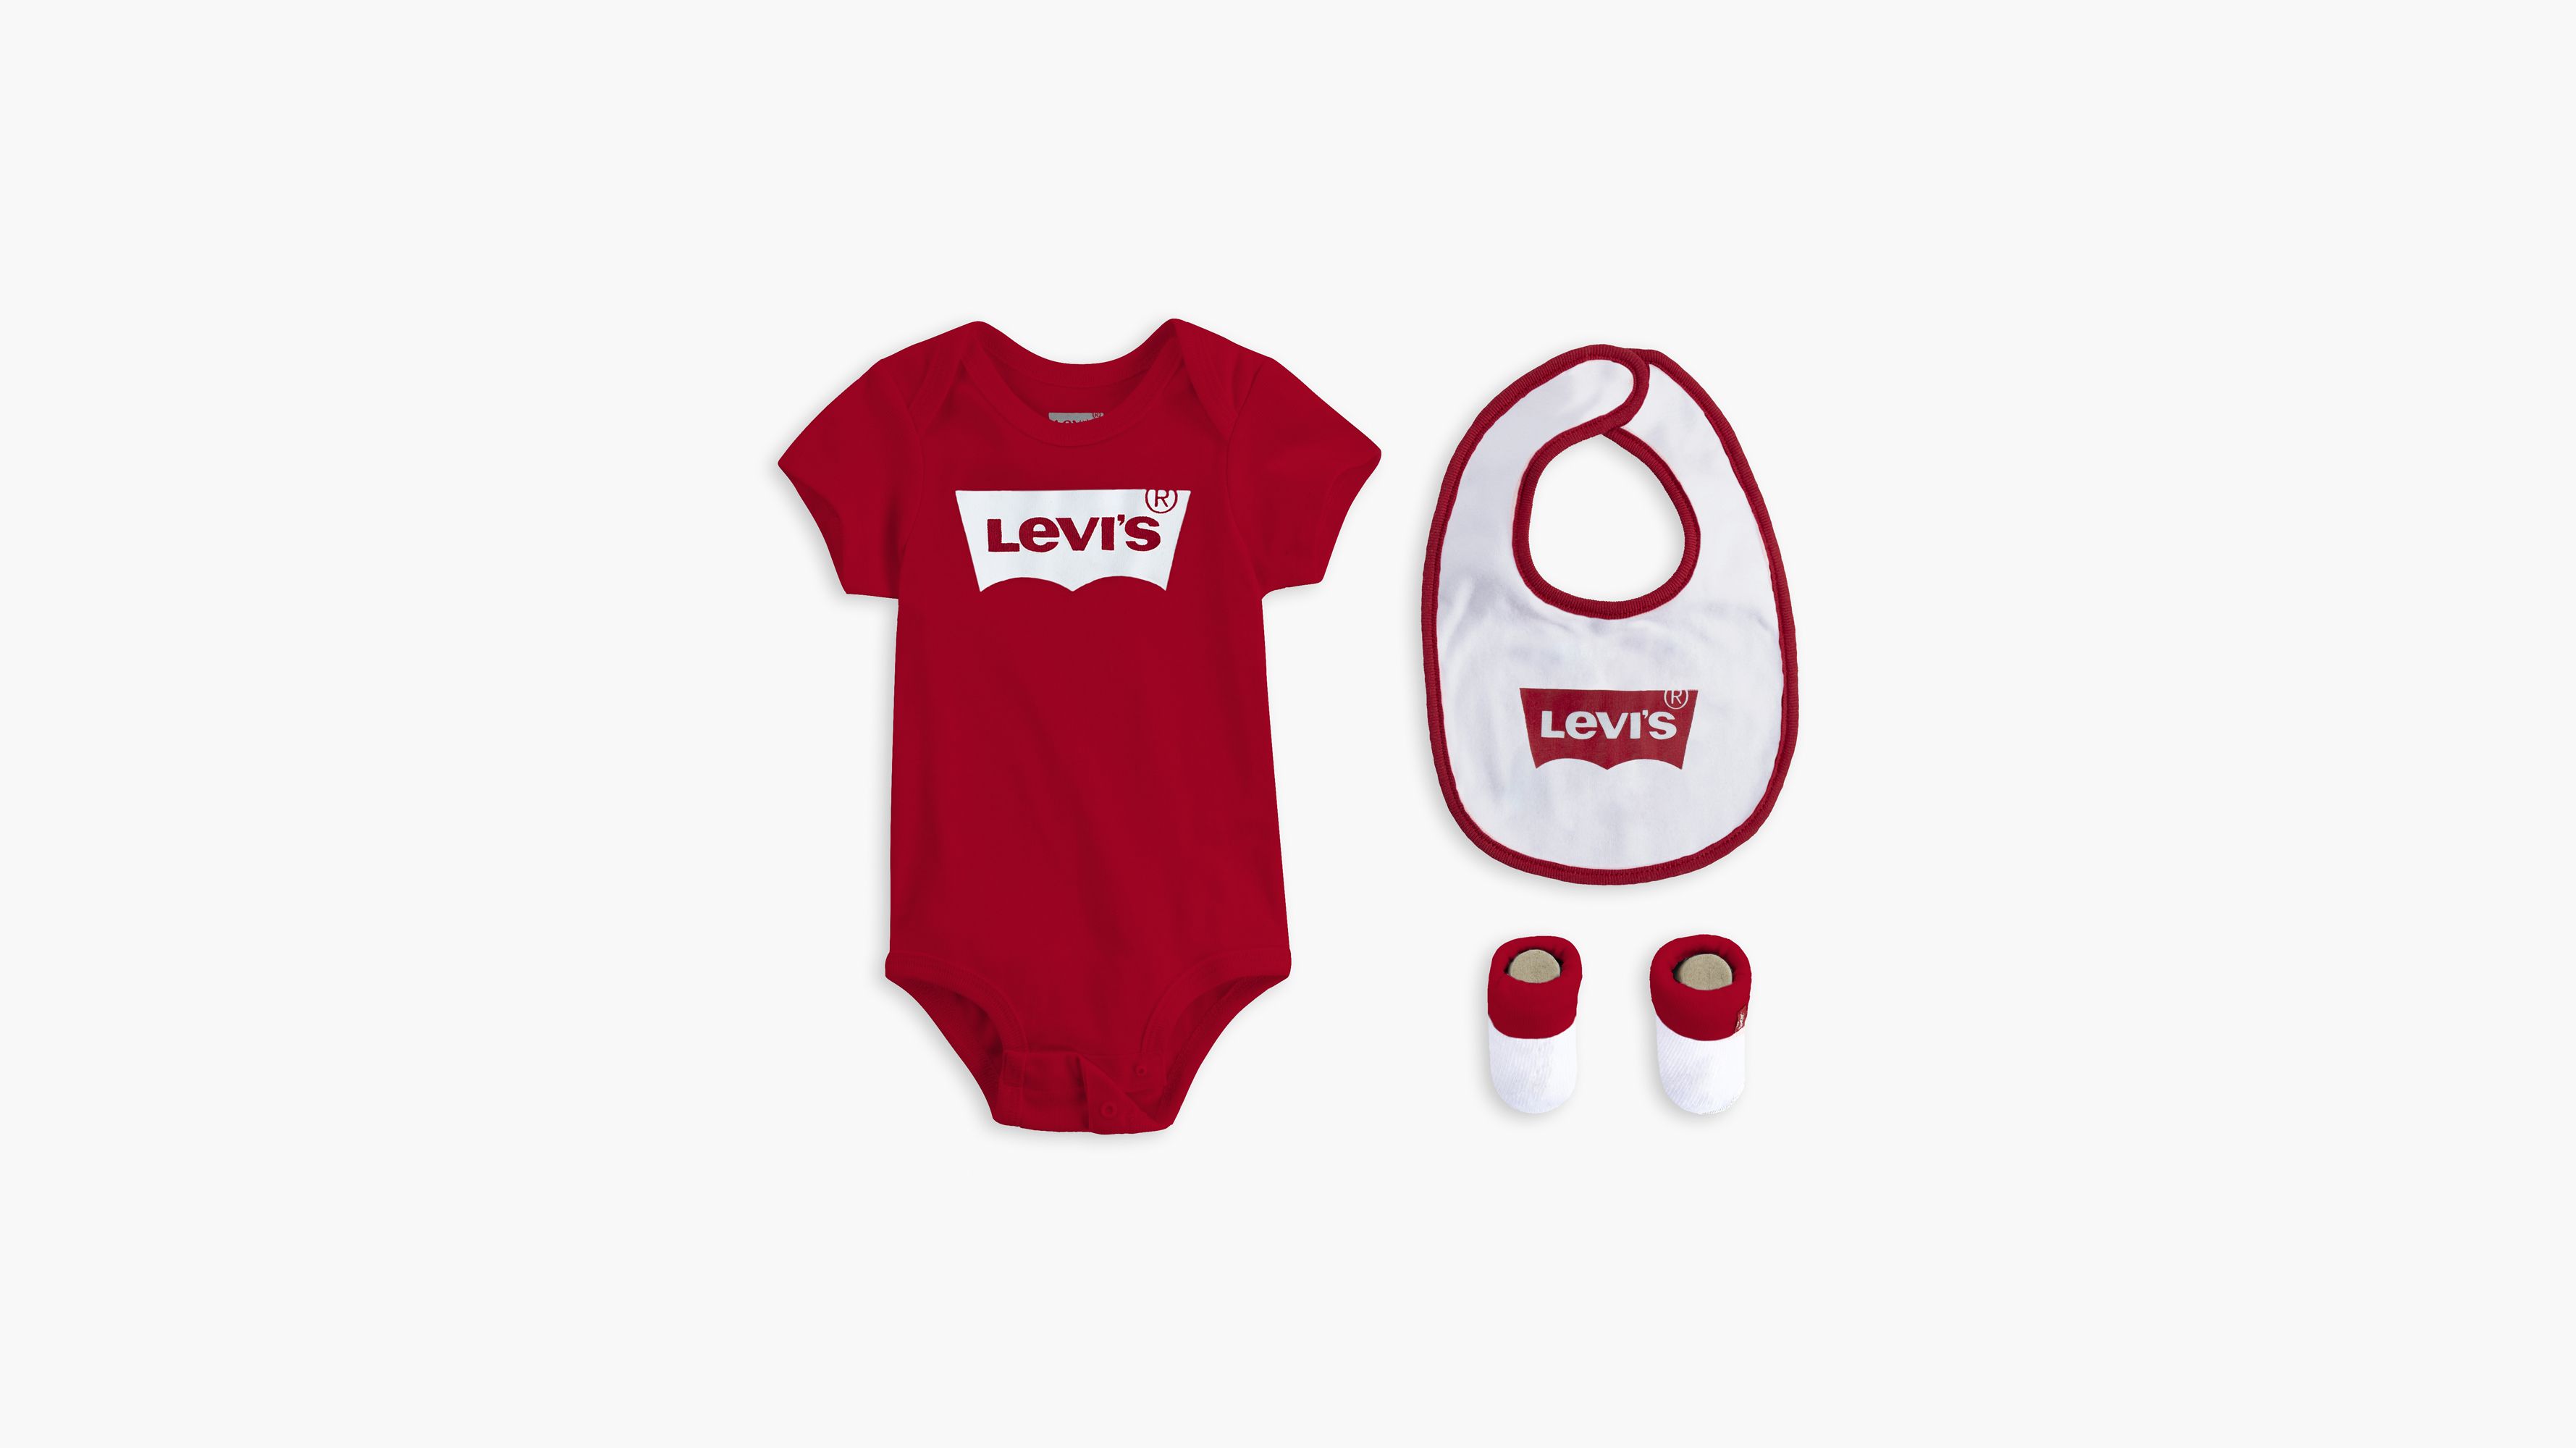 levi's baby onesie